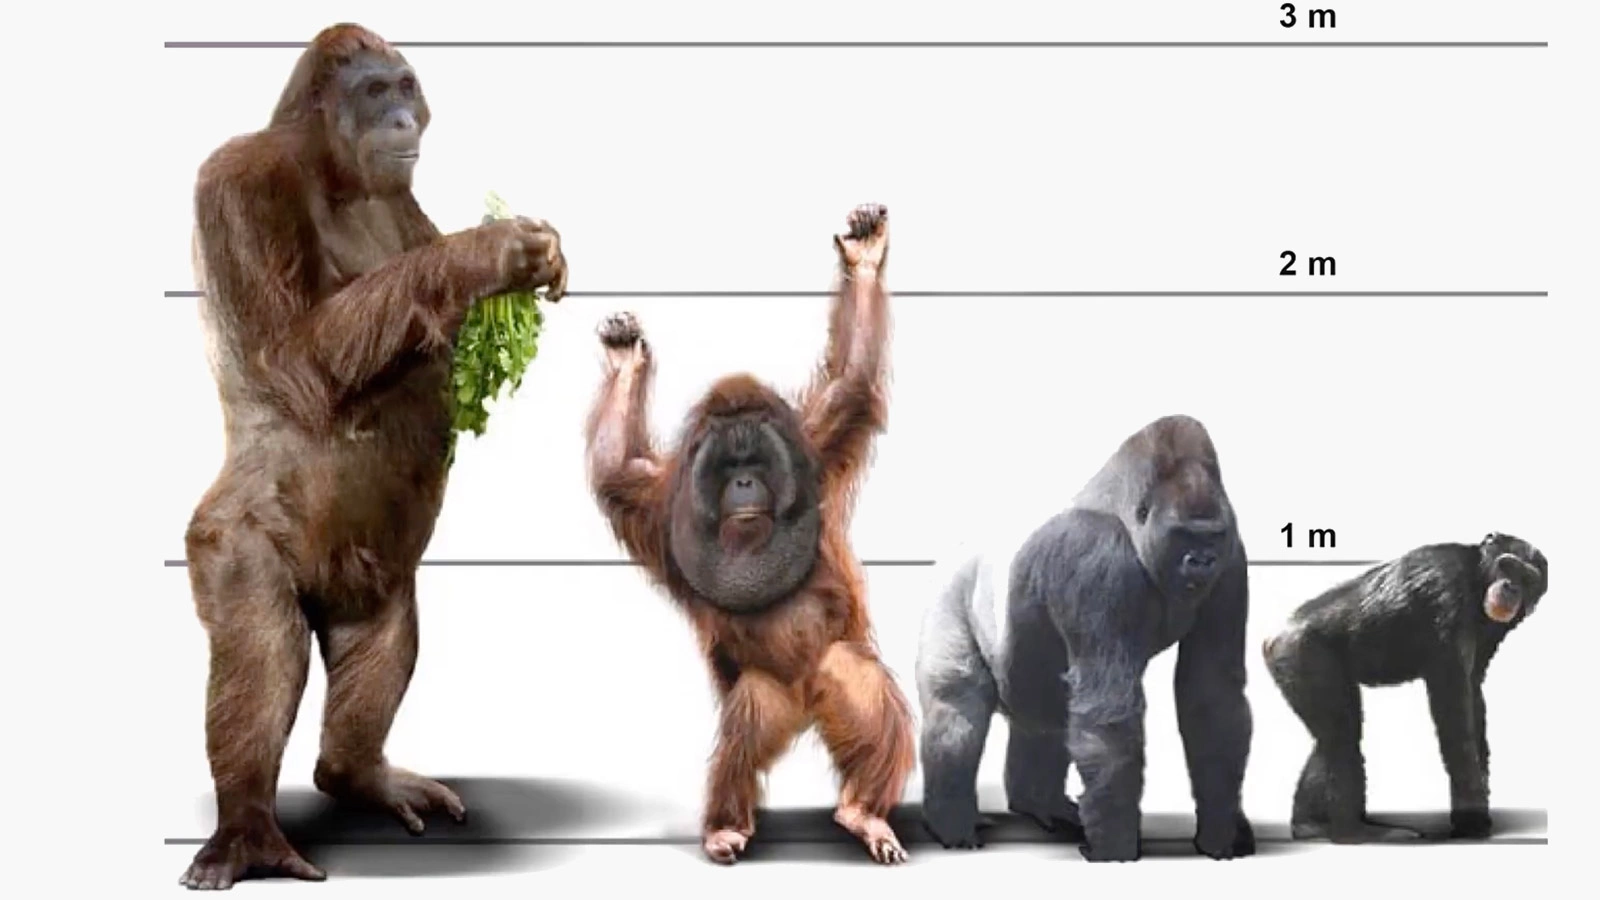 <p>Вид&nbsp;Gigantopithecus blacki (слева на изображении) достигал около 3 м в высоту, весил более 250 кг и является самым крупным видом приматов, когда-либо зарегистрированным</p>